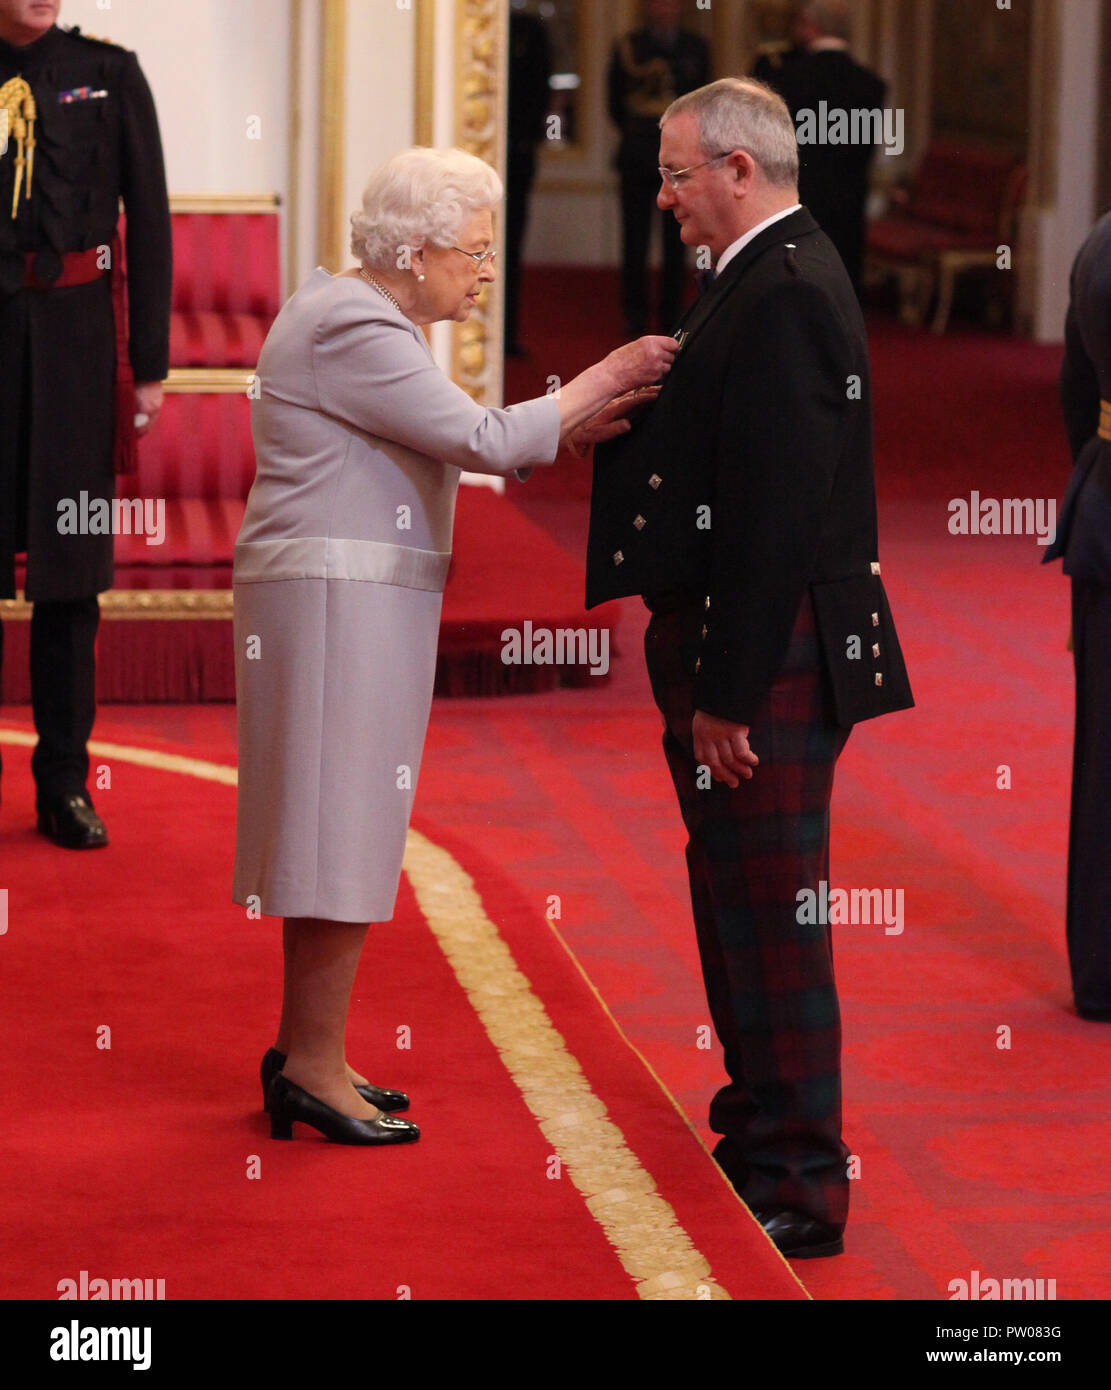 Il Sig. William Deans da Belhelvie è realizzato un MBE (membro dell'ordine dell'Impero Britannico) dalla Regina Elisabetta II, durante una cerimonia di investitura a Buckingham Palace di Londra. Foto Stock